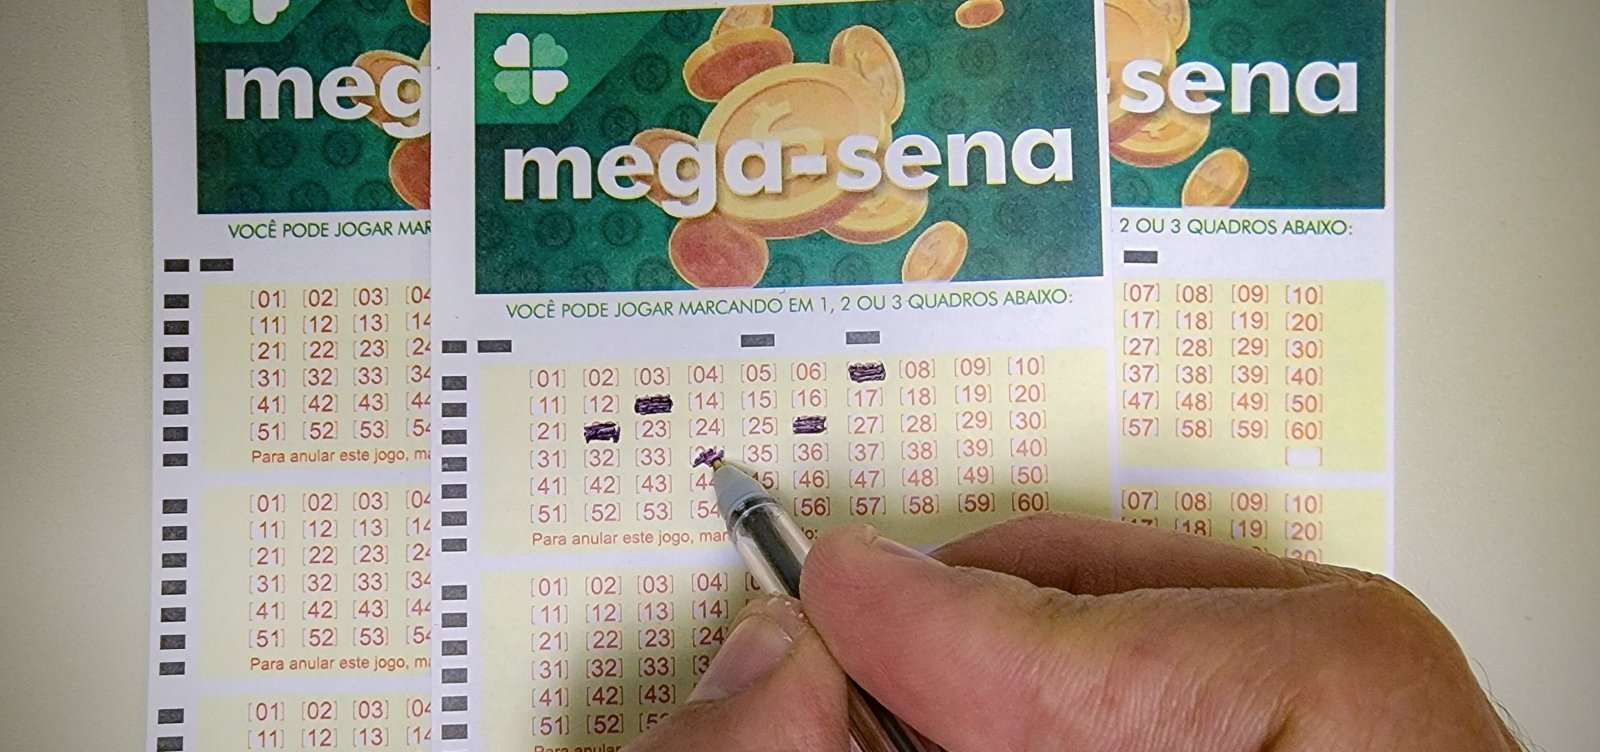 Mega-Sena sorteia prêmio de R$ 37 milhões nesta terça-feira